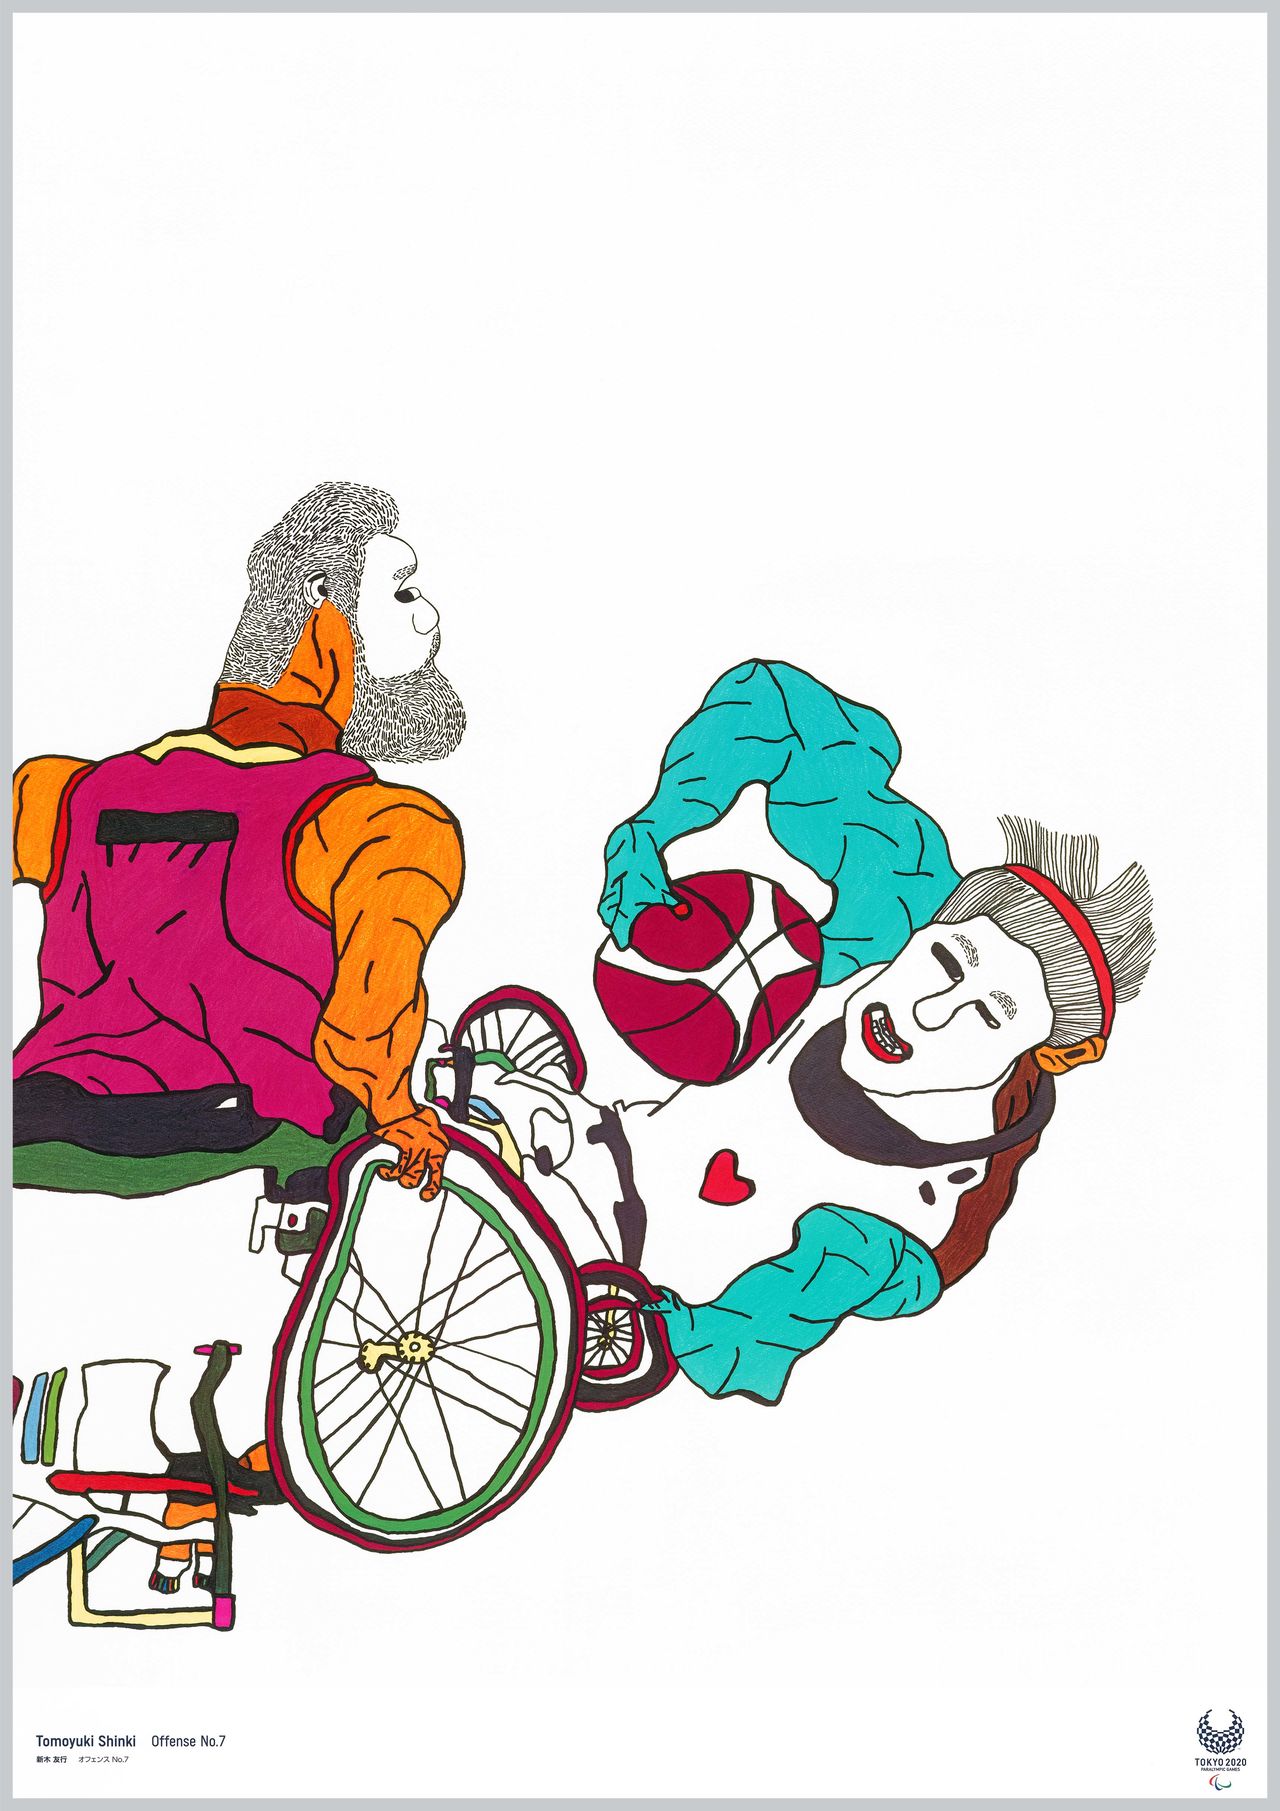 Details about   Tokyo Olympics 2020 Paralympic Official Art Poster Postcard Koji Kakinuma Japan 